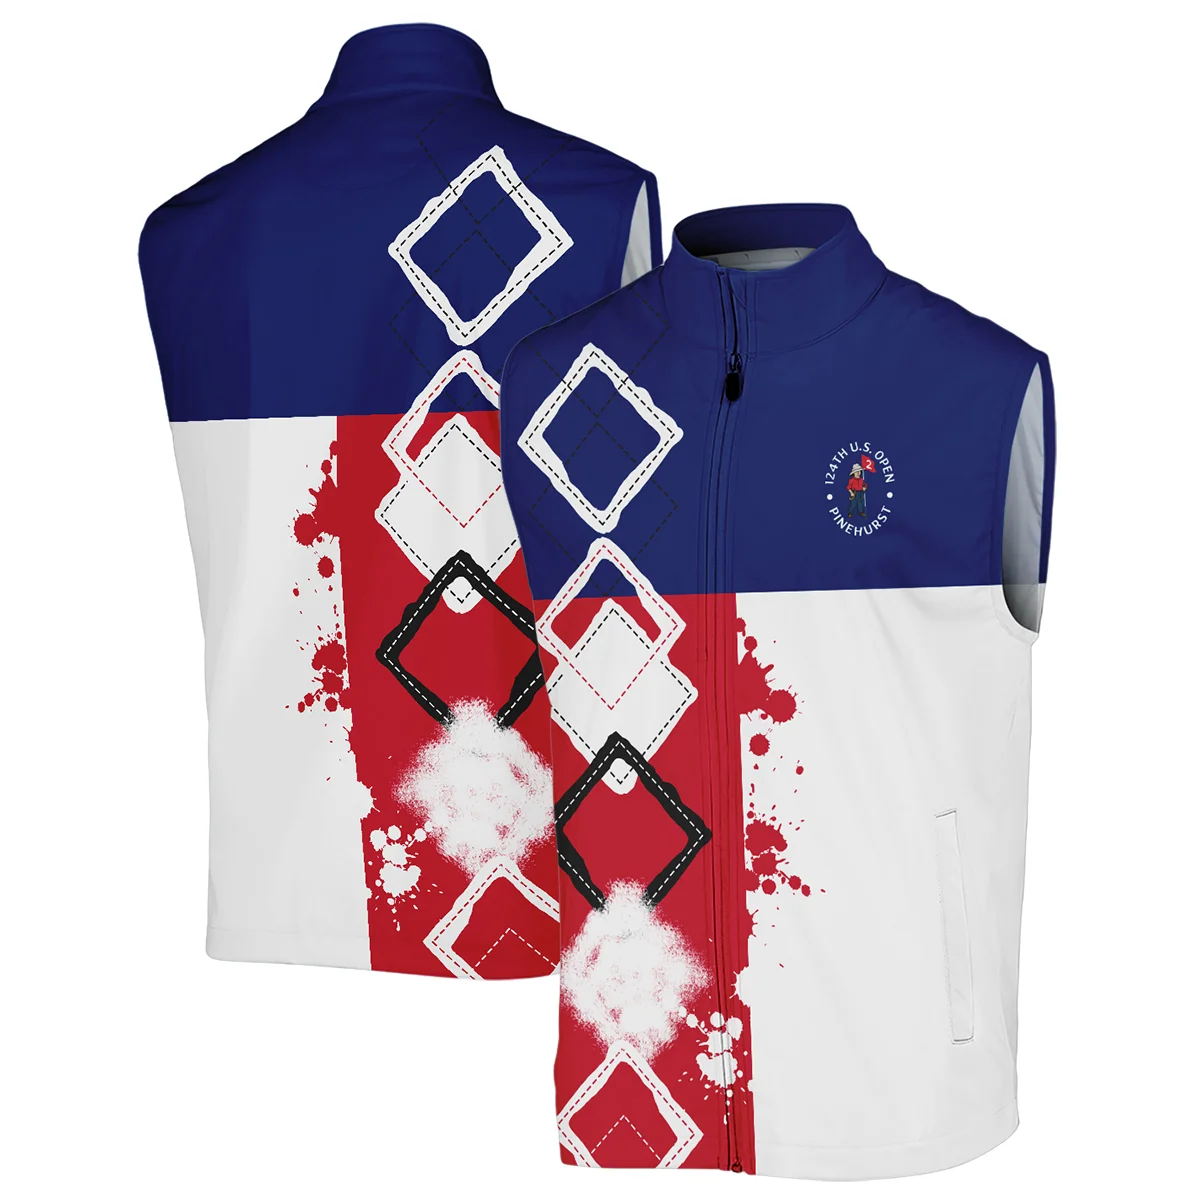 124th U.S. Open Pinehurst Titleist Unisex Sweatshirt Blue Red White Pattern Grunge All Over Print Sweatshirt